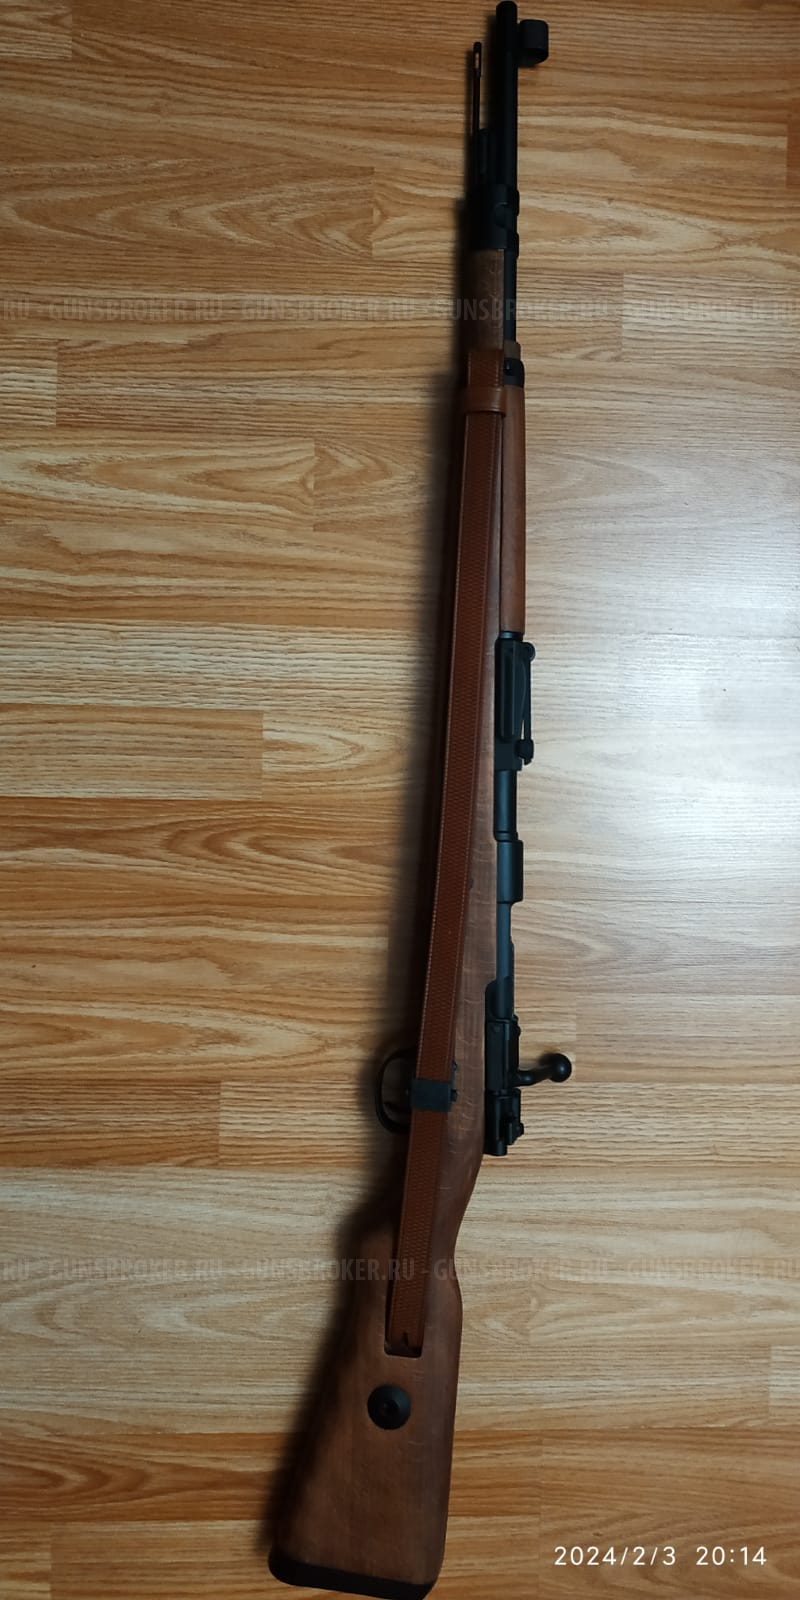 Страйкбольный карабин Mauser К98K (6мм, грингаз, металл/дерево) от PPS